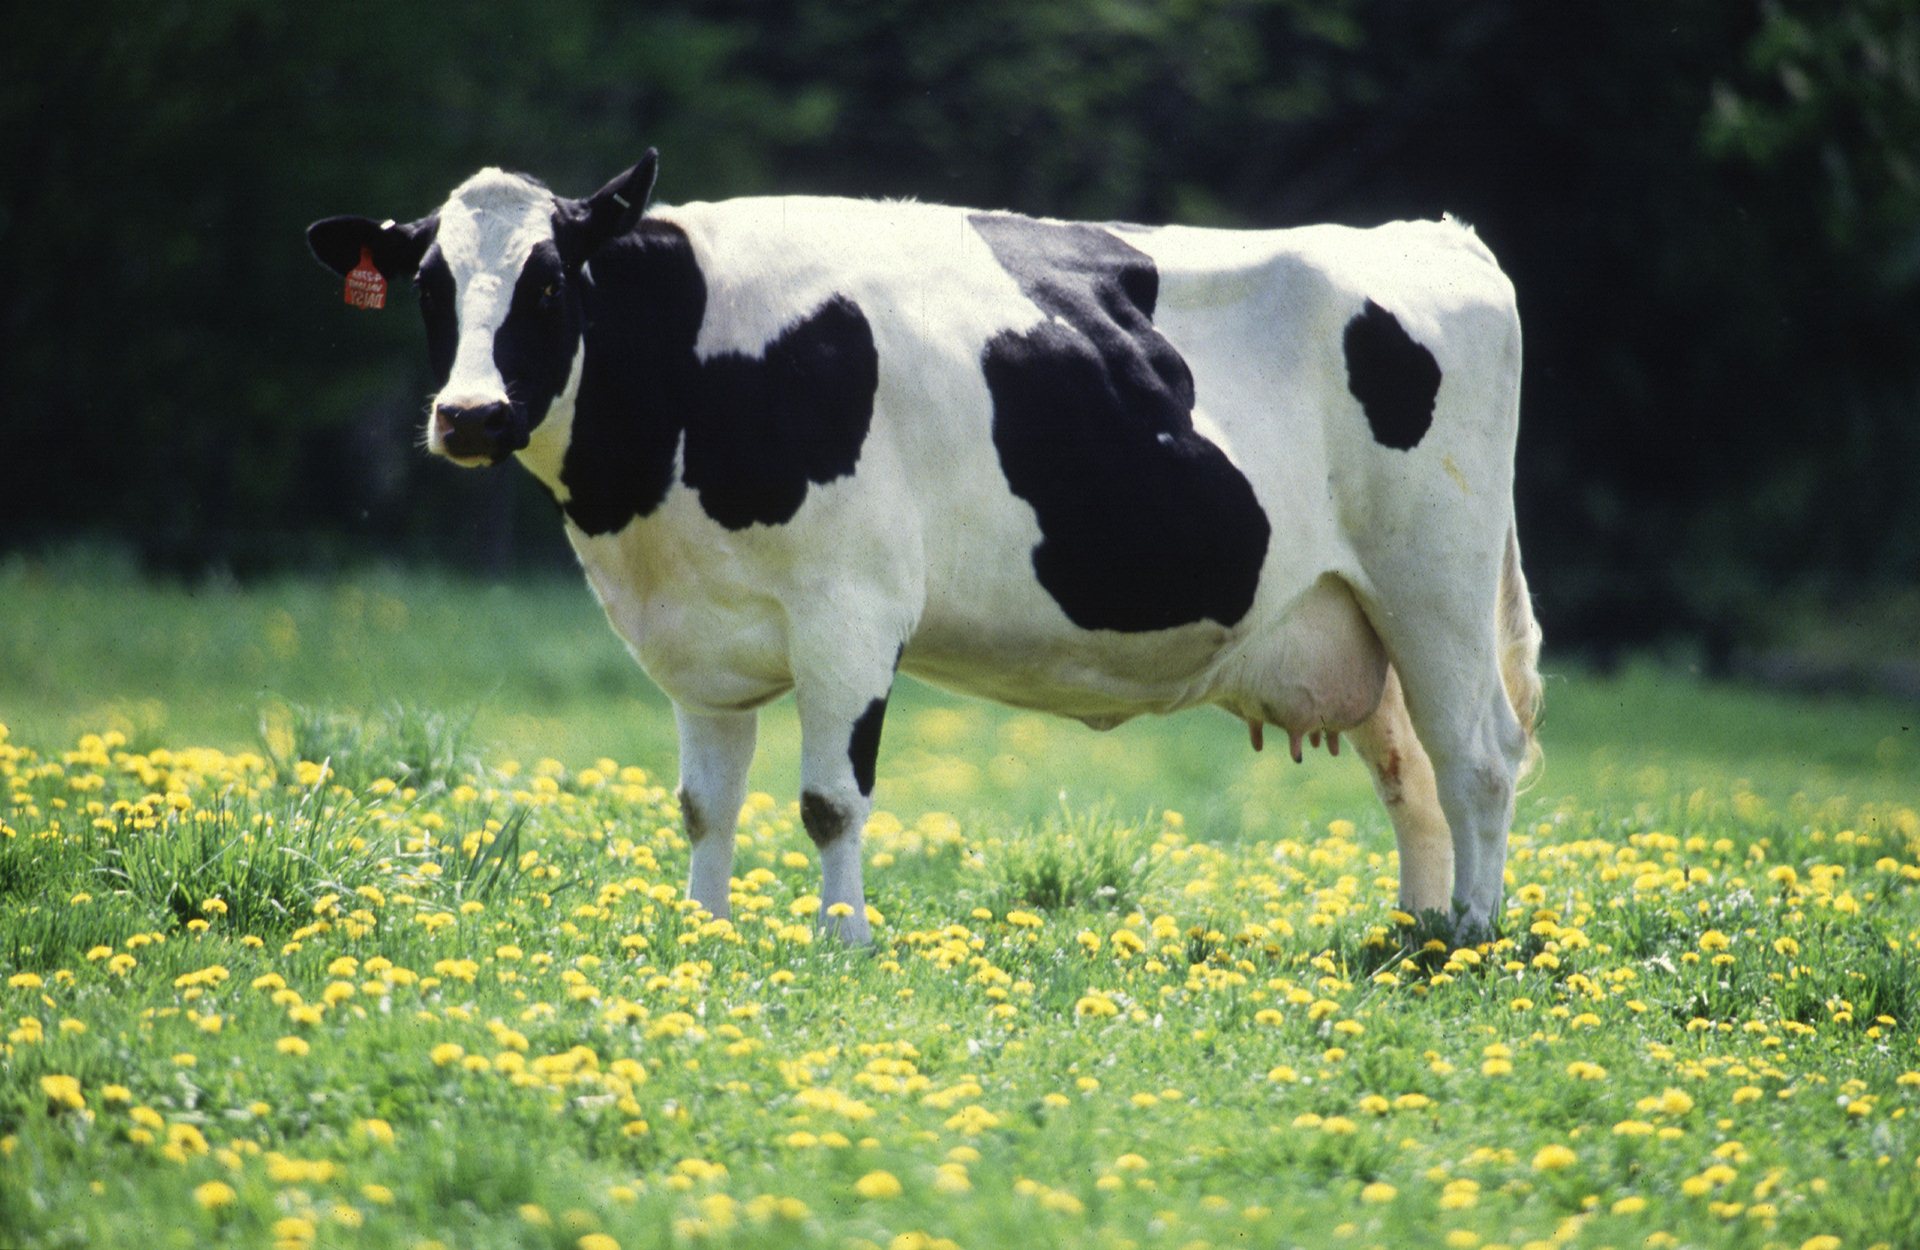 China clona 3 “súper vacas” que pueden producir 54 toneladas de leche al año; los planes son manada de 1.000 vacas.